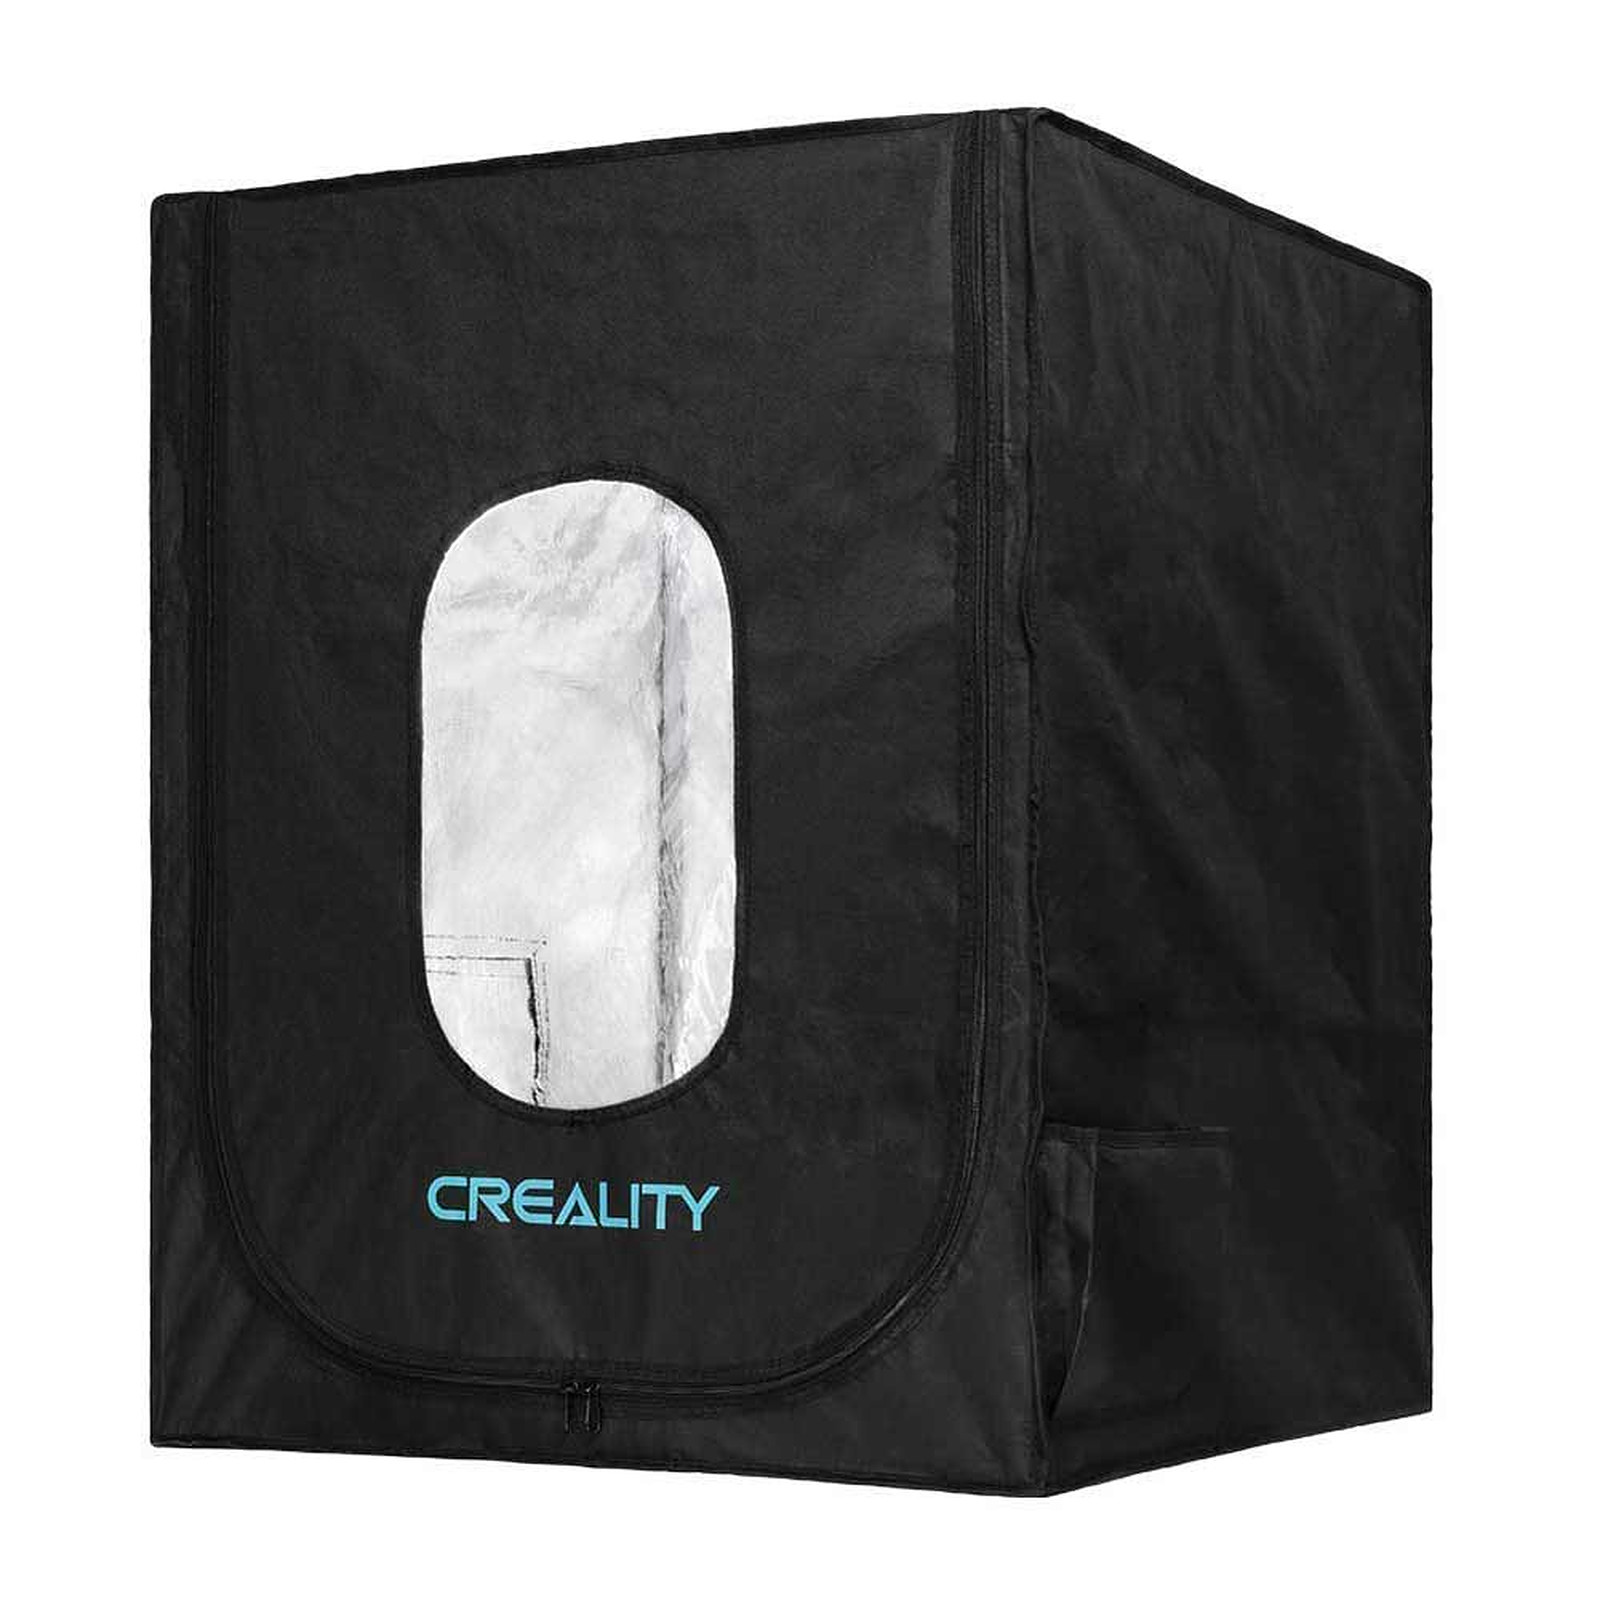 Creality Housse Isolante pour Ender 5, Ender 5 pro, Ender 5 plus, CR 10S Pro V2, CR-X - Accessoires imprimante 3D Creality